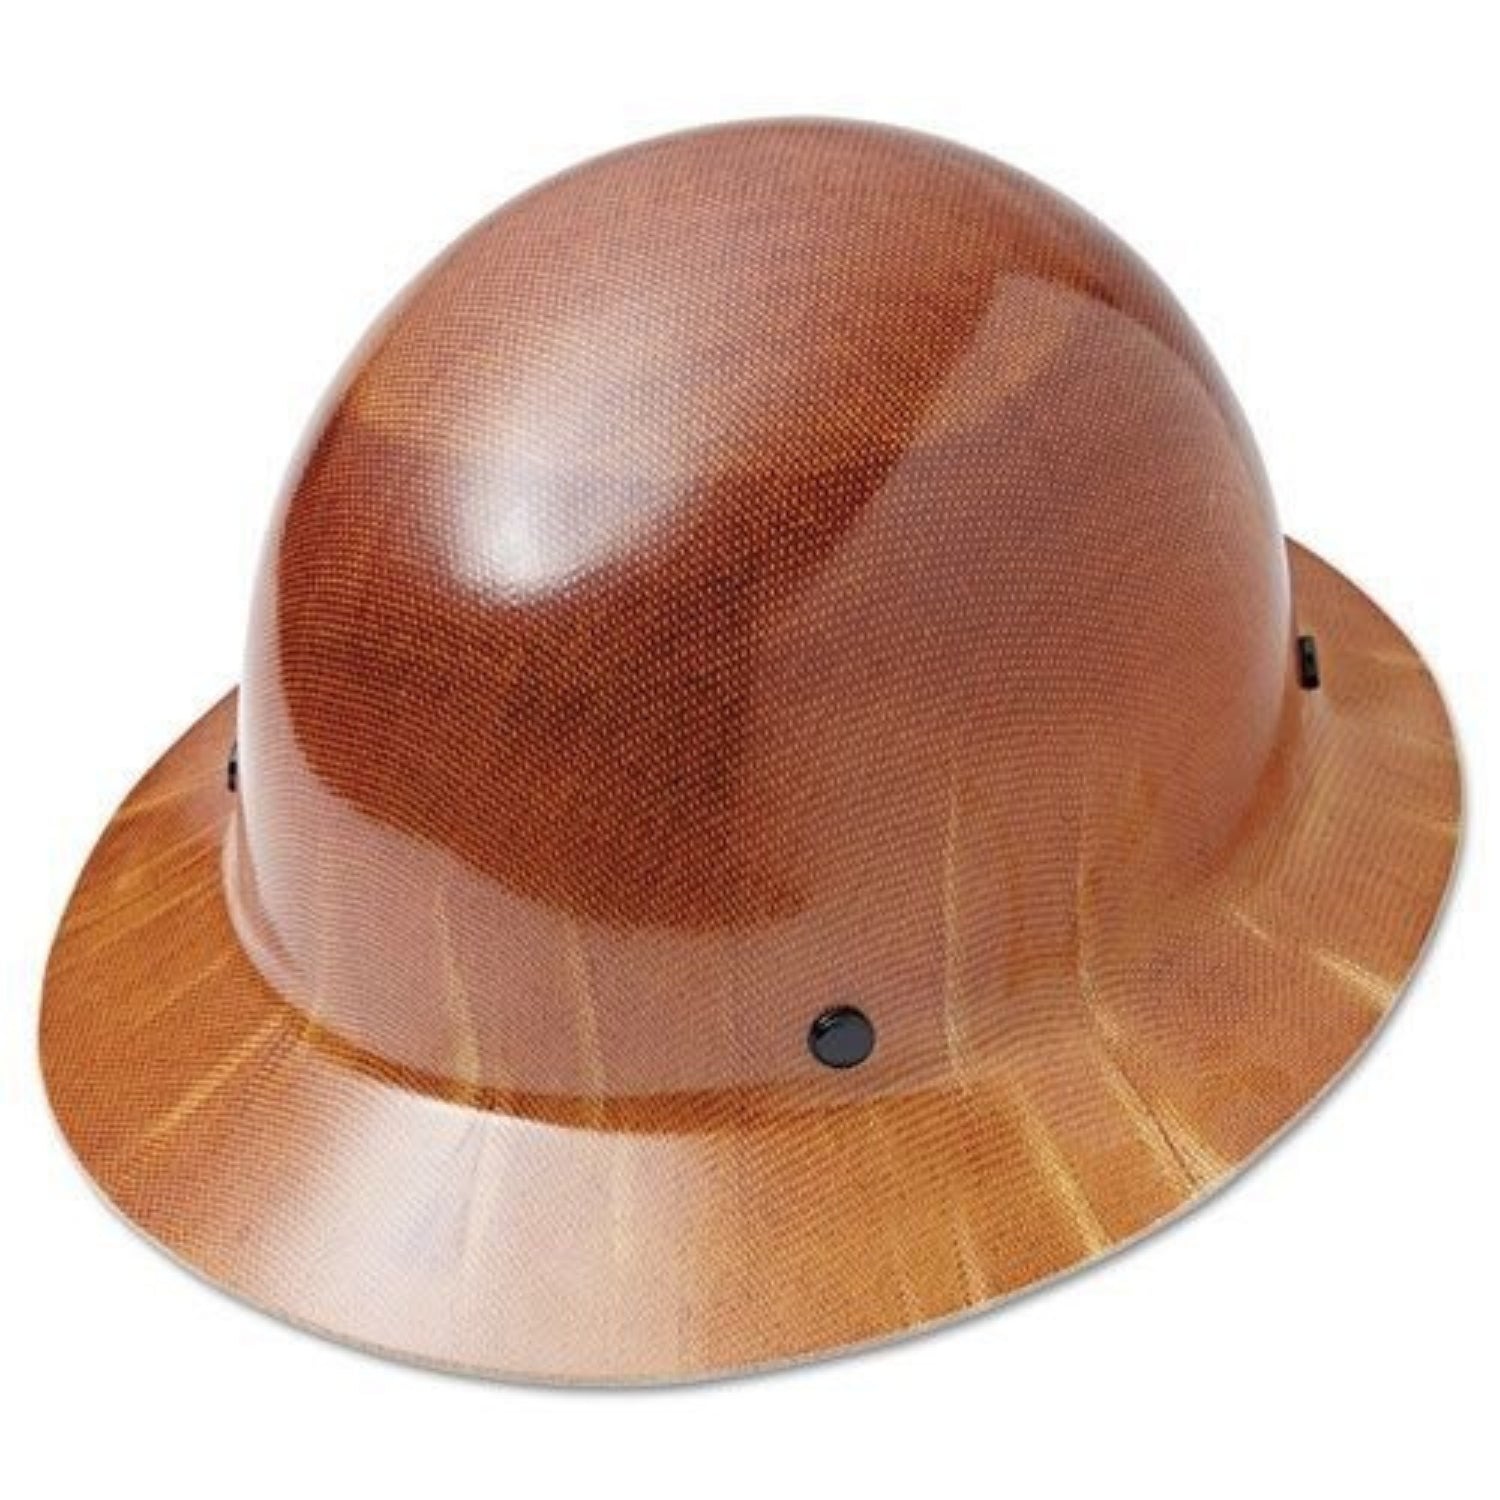 MSA Skullgard 475407- Protective Caps and Hats, Fas-Trac Ratchet, Hat, Natural Tan